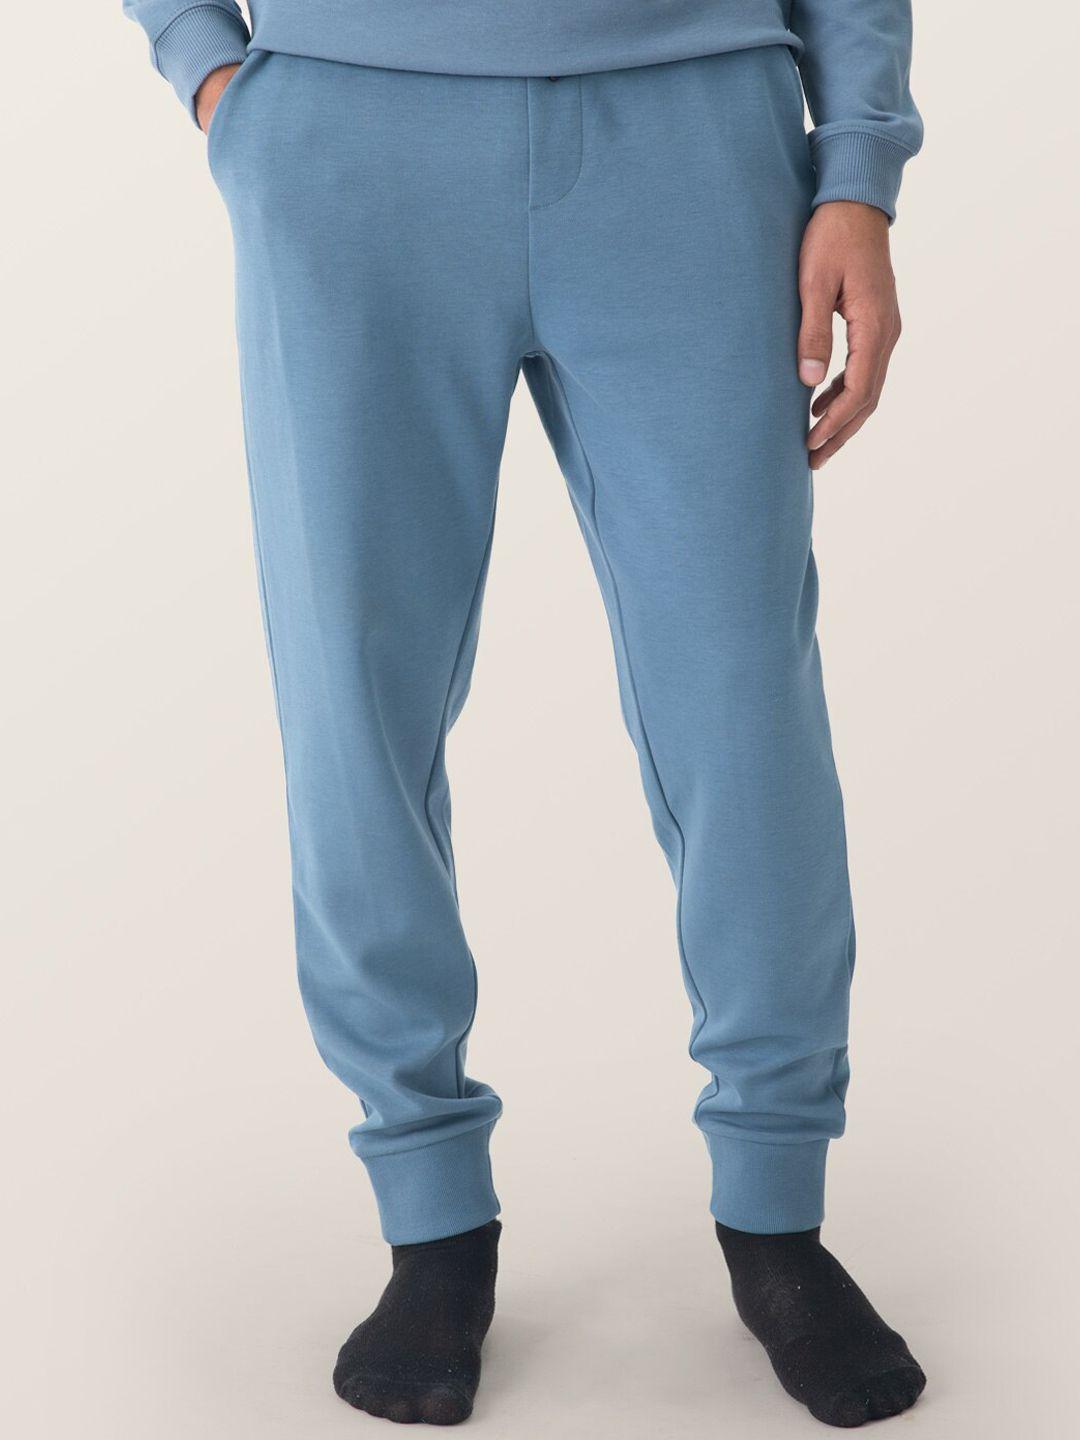 damensch men blue regular fit joggers lounge pants